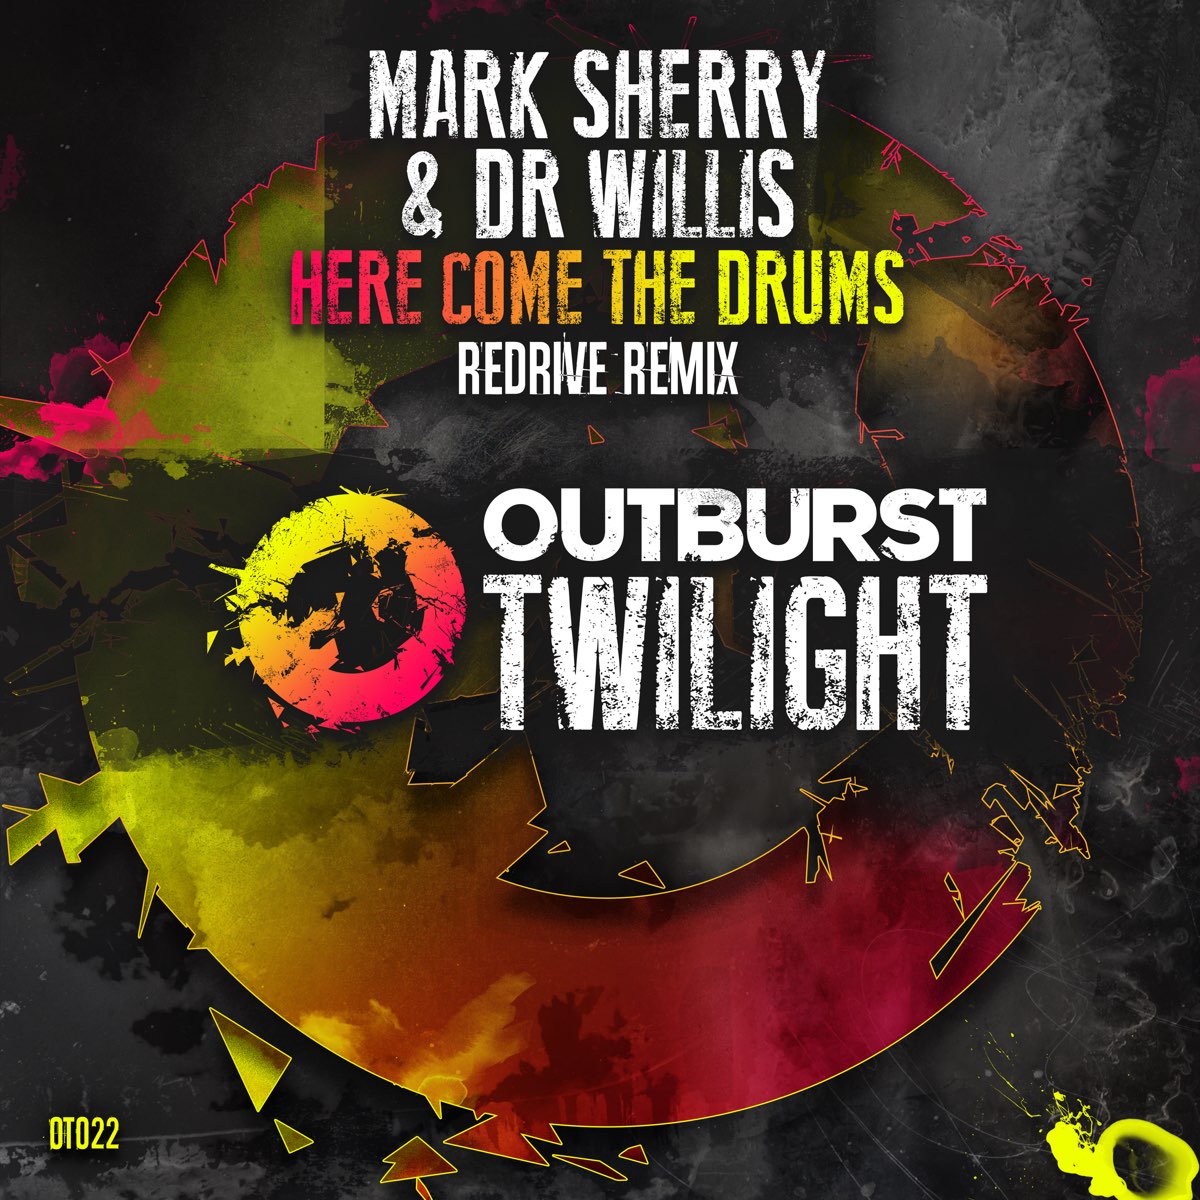 Песня here remix. Mark Sherry. The Drums альбомы. The outburst группа.